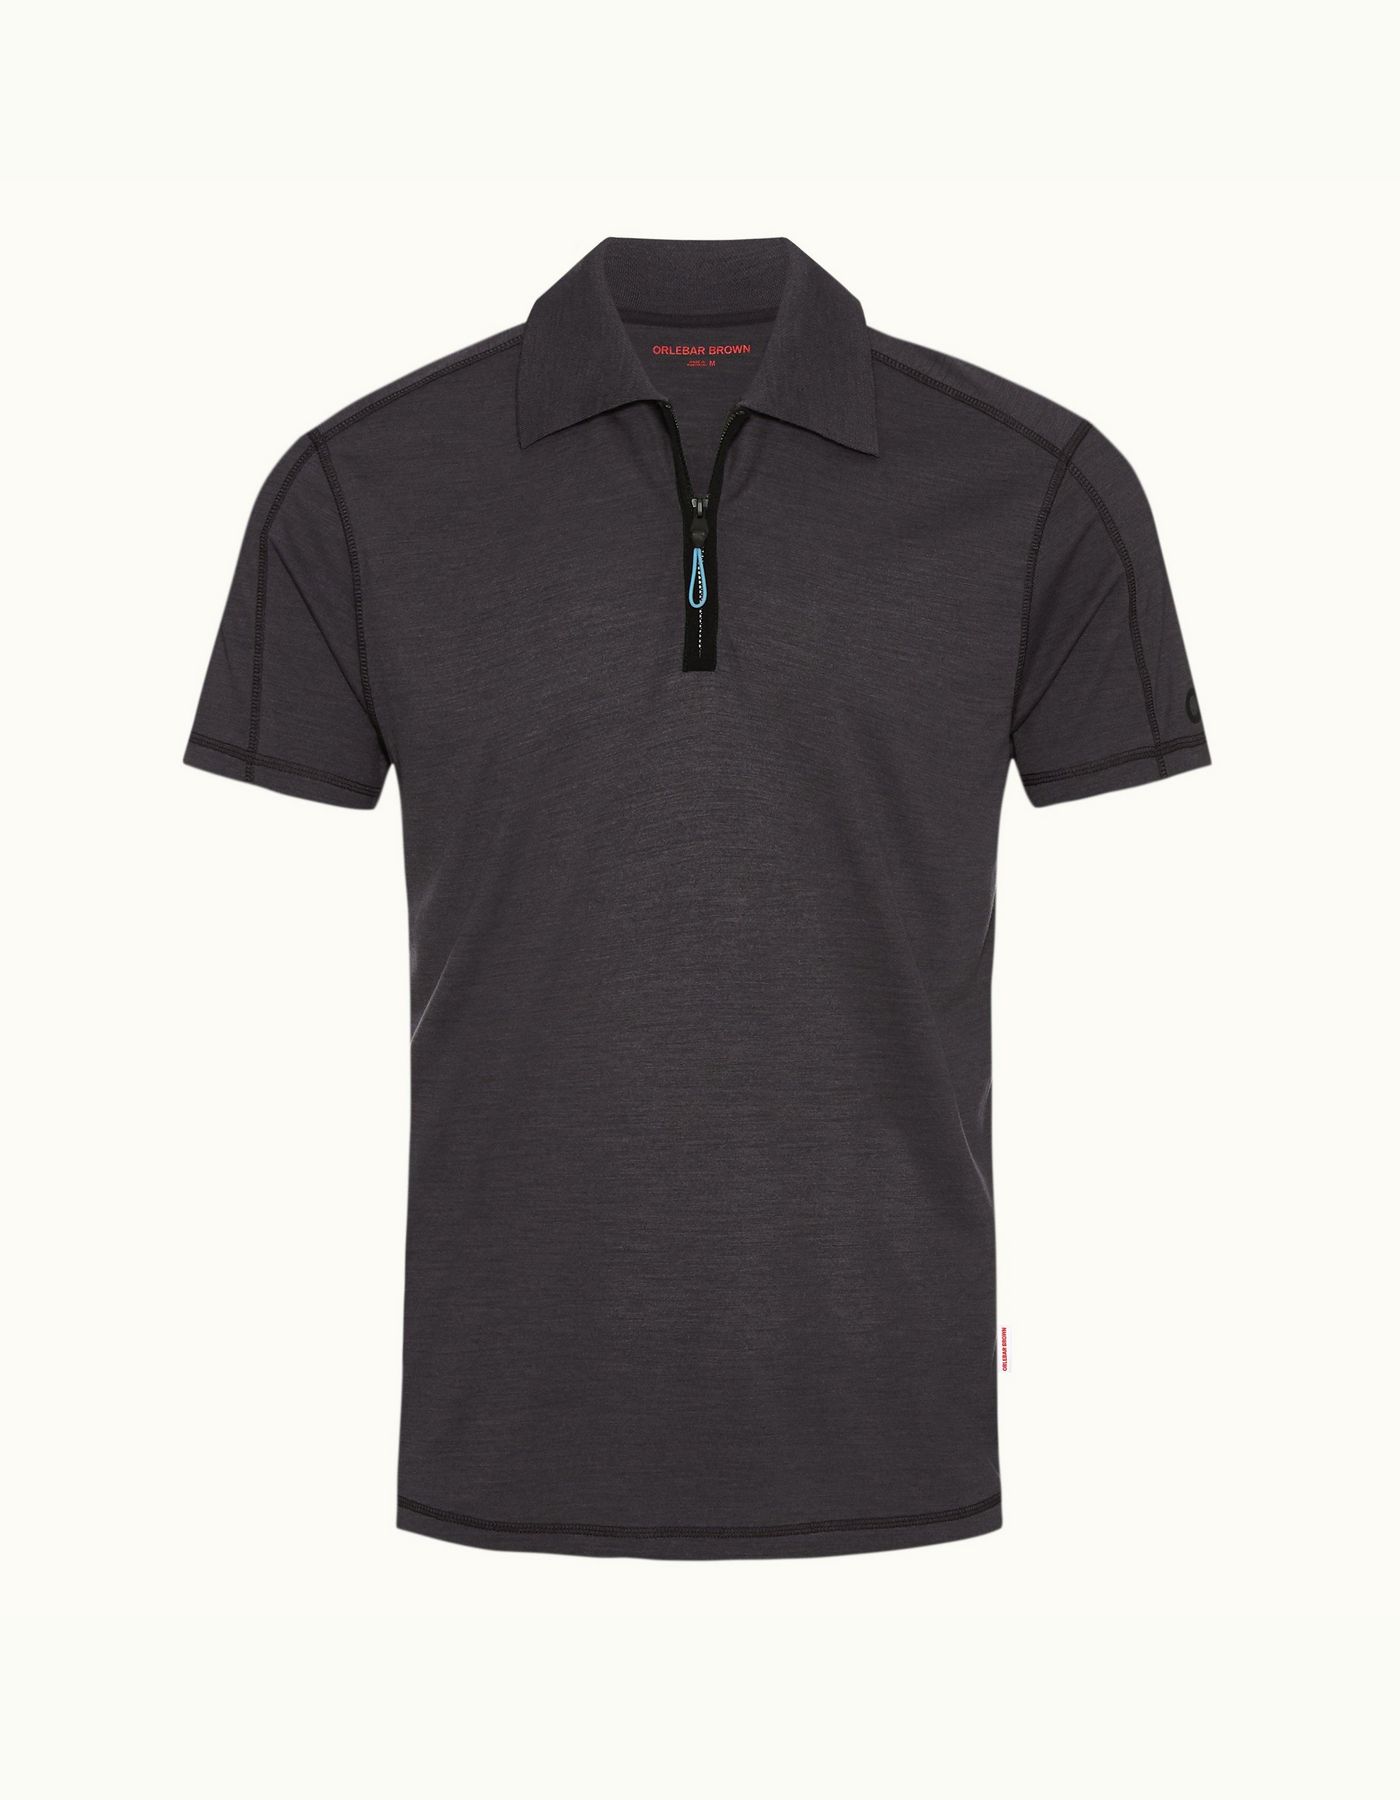 Jarrett - Mens Piranha Grey Classic Fit Zip Placket Polo Shirt